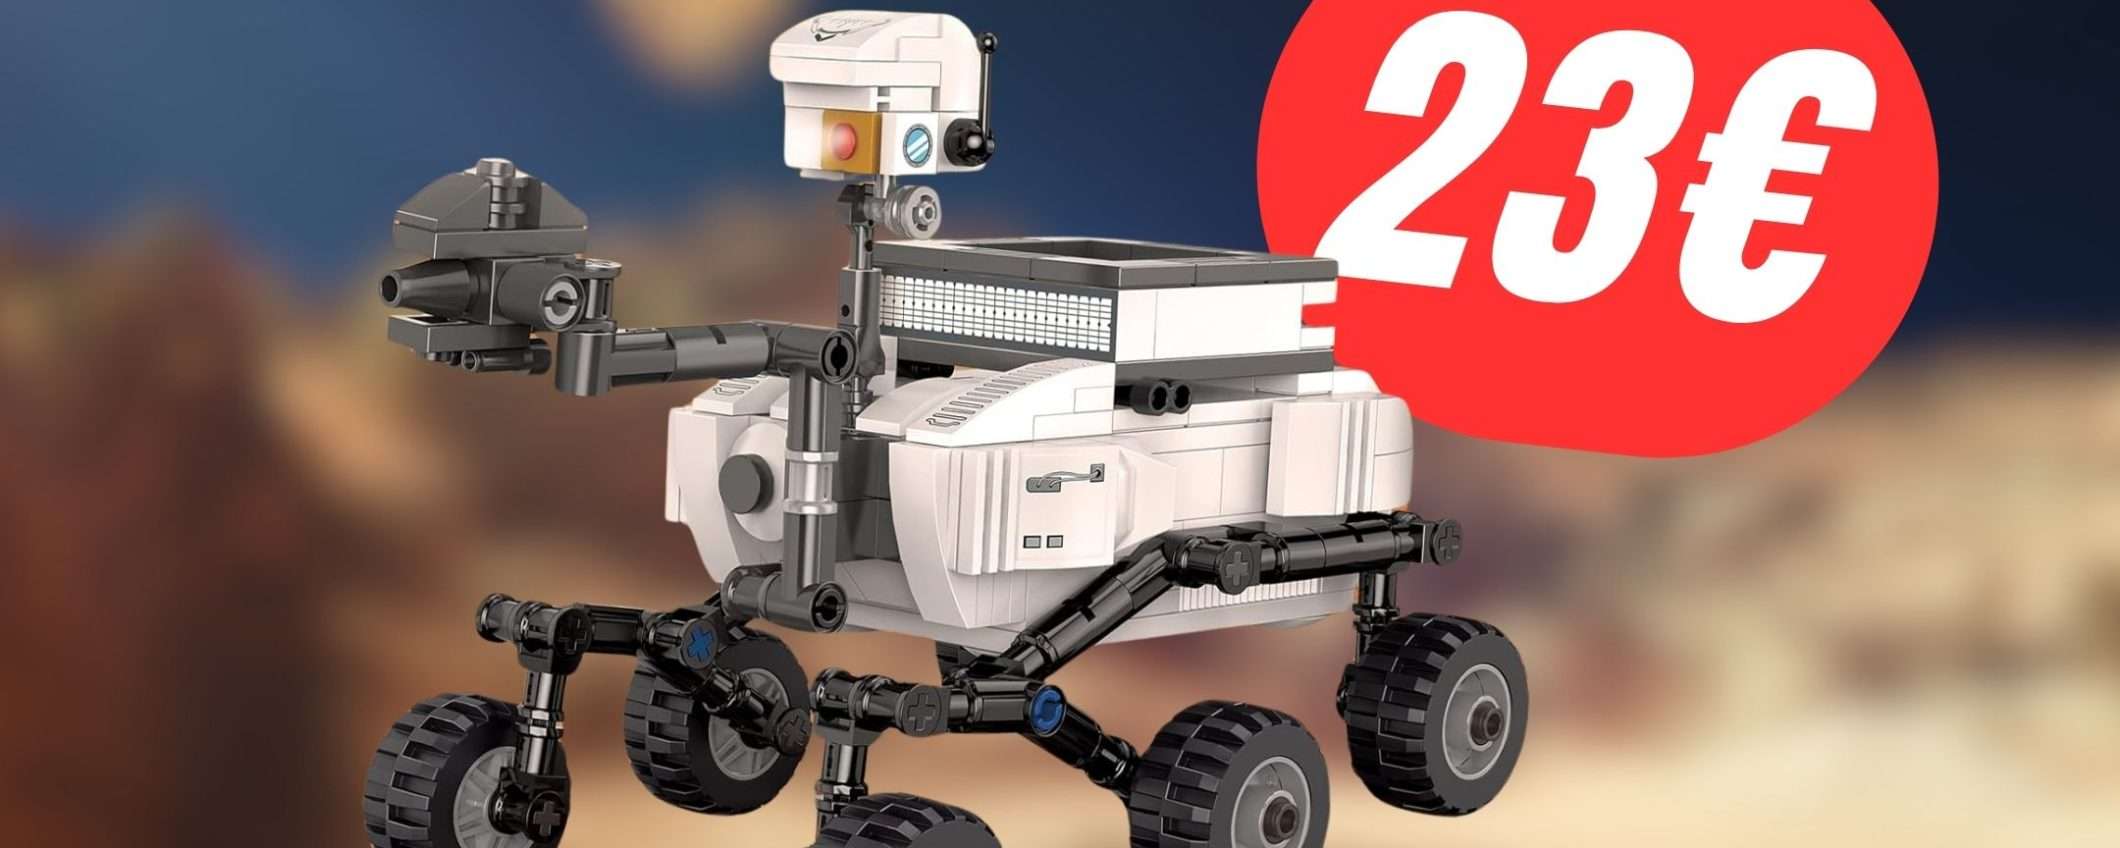 Il Mars Rover da costruire costa pochissimo grazie allo SCONTO Amazon!